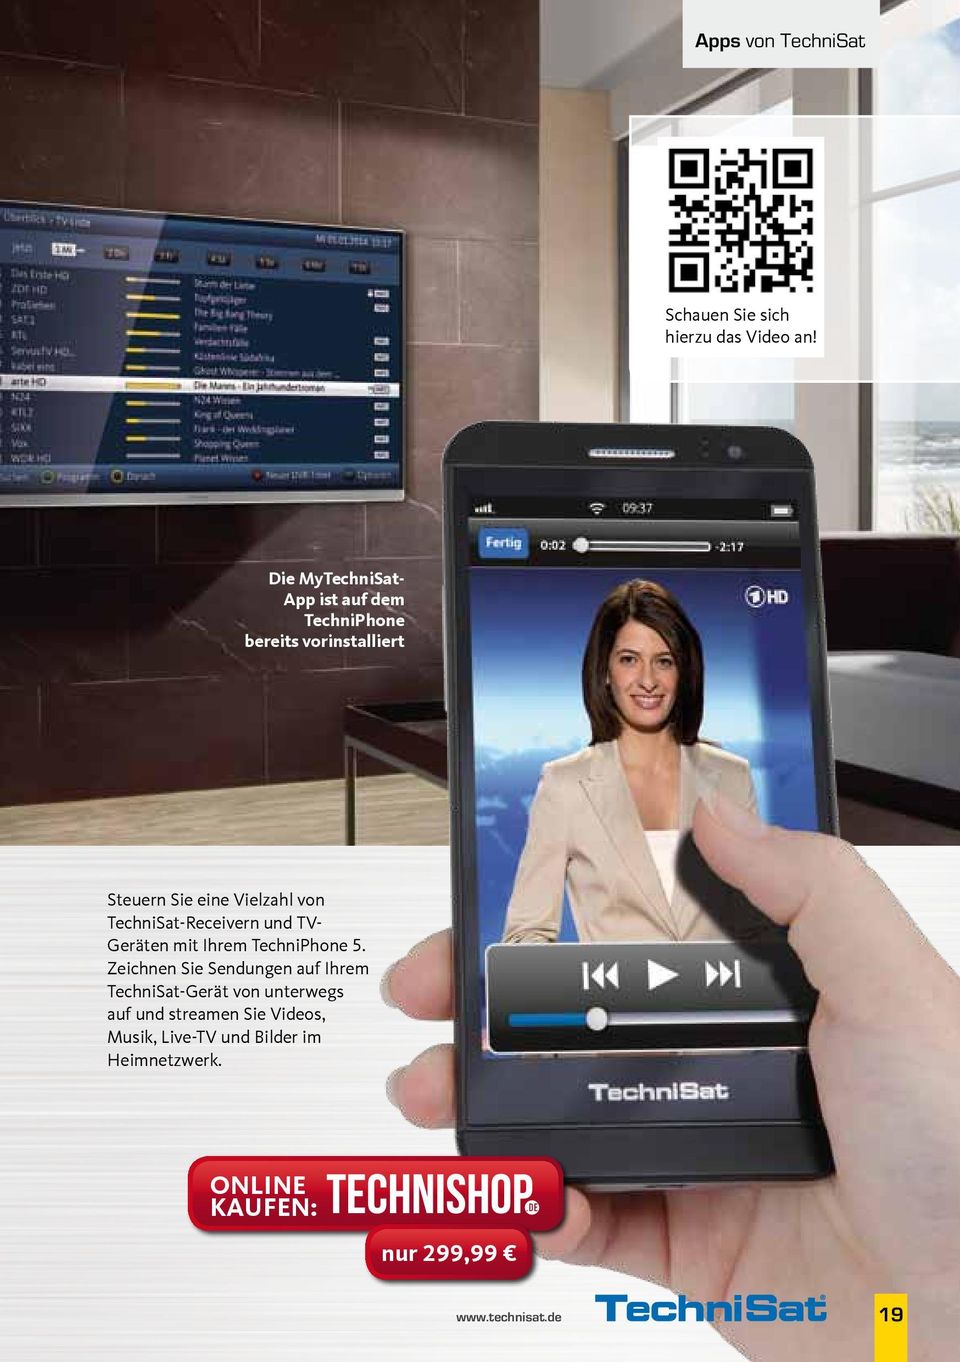 TechniSat-Receivern und TV- Geräten mit Ihrem TechniPhone 5.